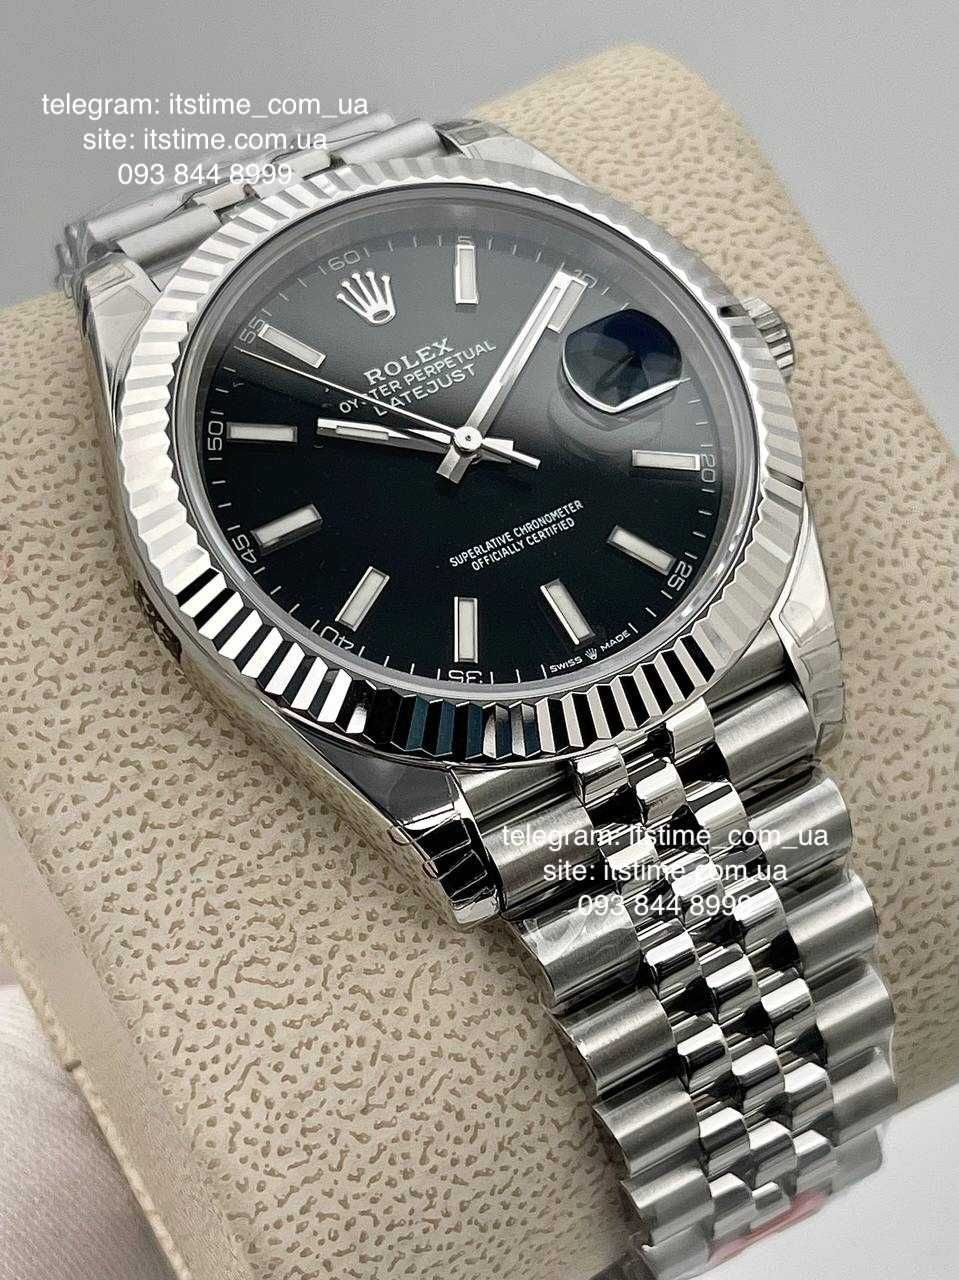 мужские часы Rolex Datejust 41 mm 36 mm все цвета